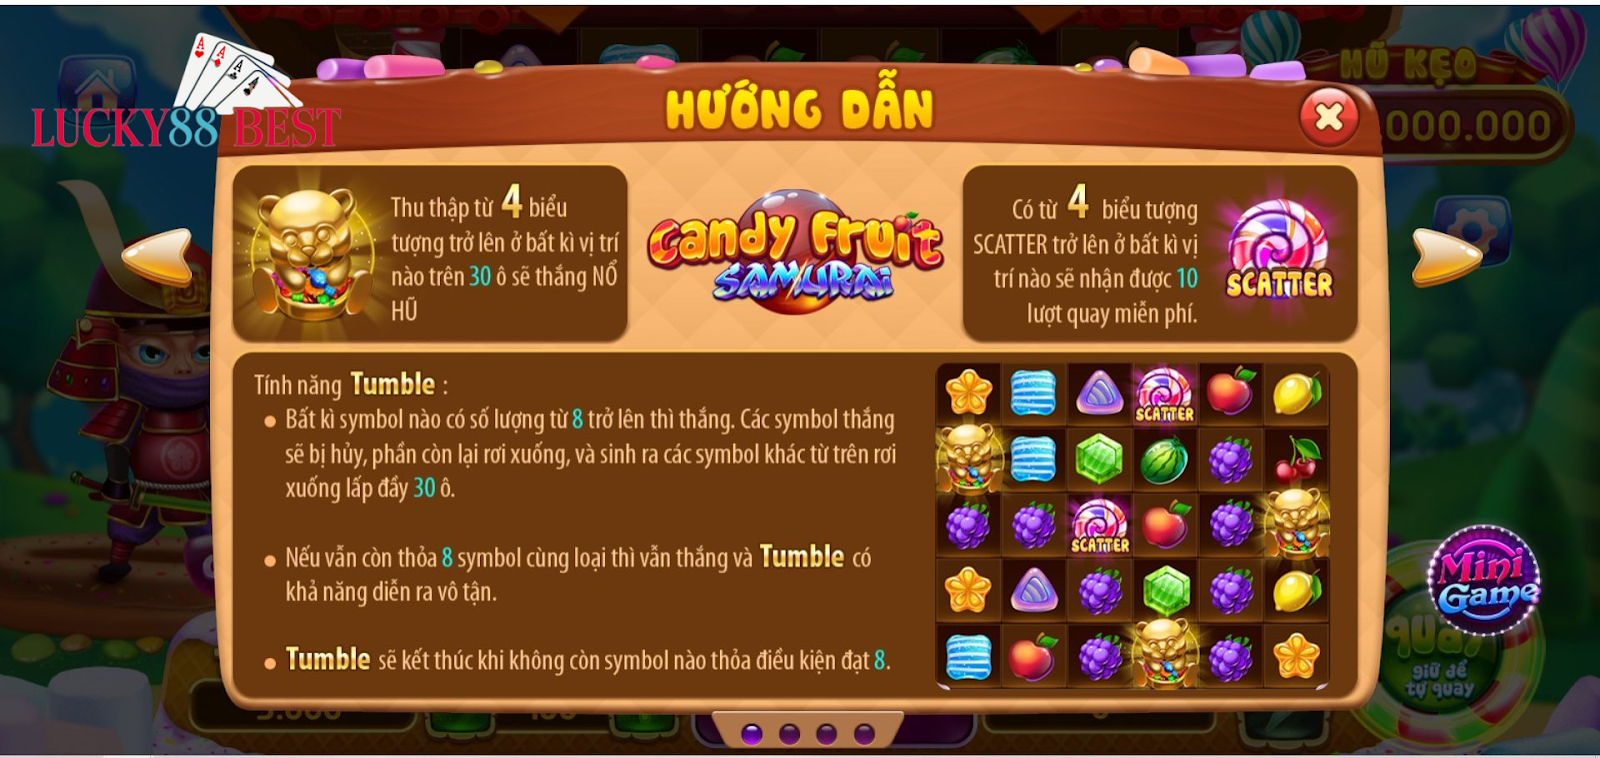 Hướng dẫn chơi của tựa game Candy Fruit Samurai chi tiết, cụ thể